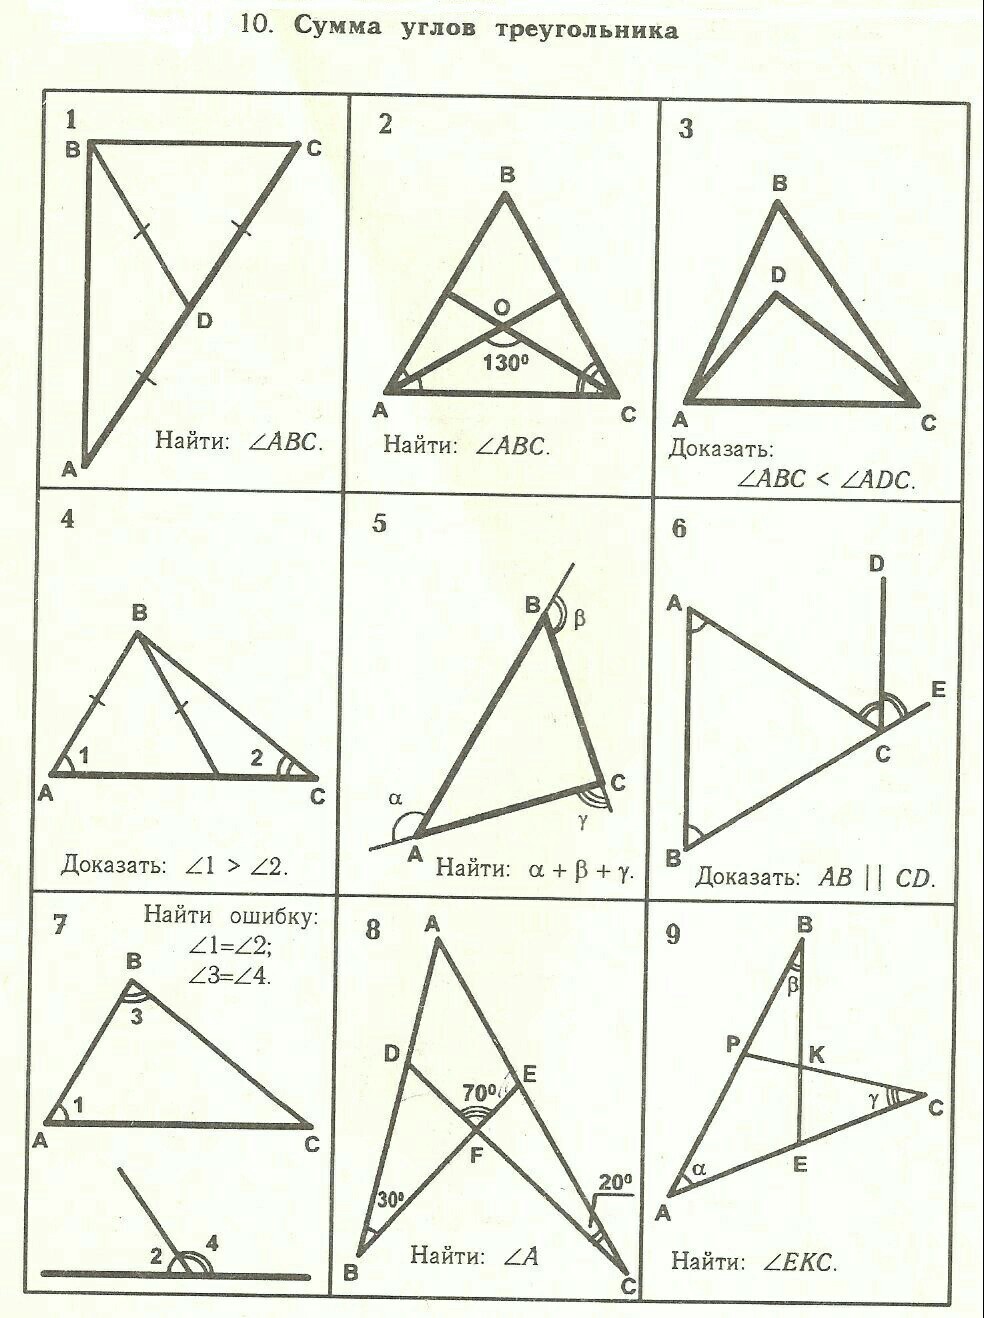 Максимальное количество углов в треугольнике. Таблица 7.10 сумма углов треугольника. Рабинович геометрия 7-9 таблица 7.10. Задачи сумма углов треугольника 7 класс геометрия. Задача 7.10 сумма углов треугольника решение.